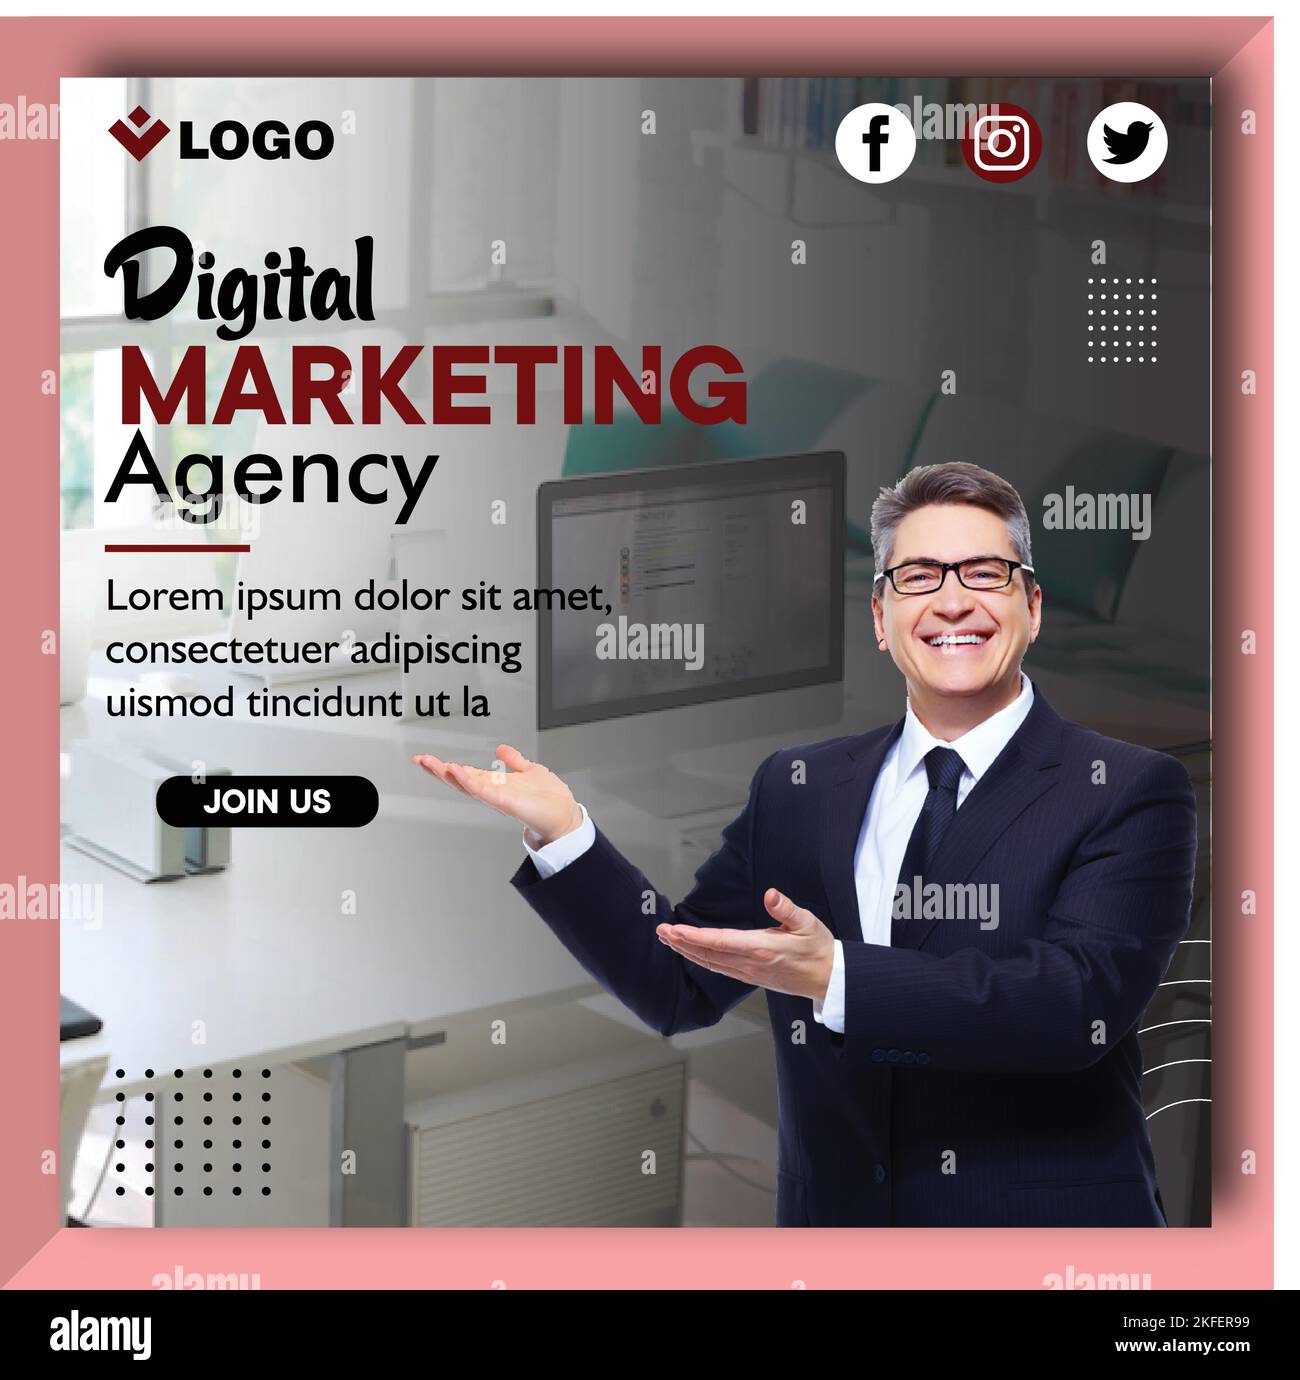 Business Social Media Post Template per Digital Marketing Agency Illustrazione Vettoriale